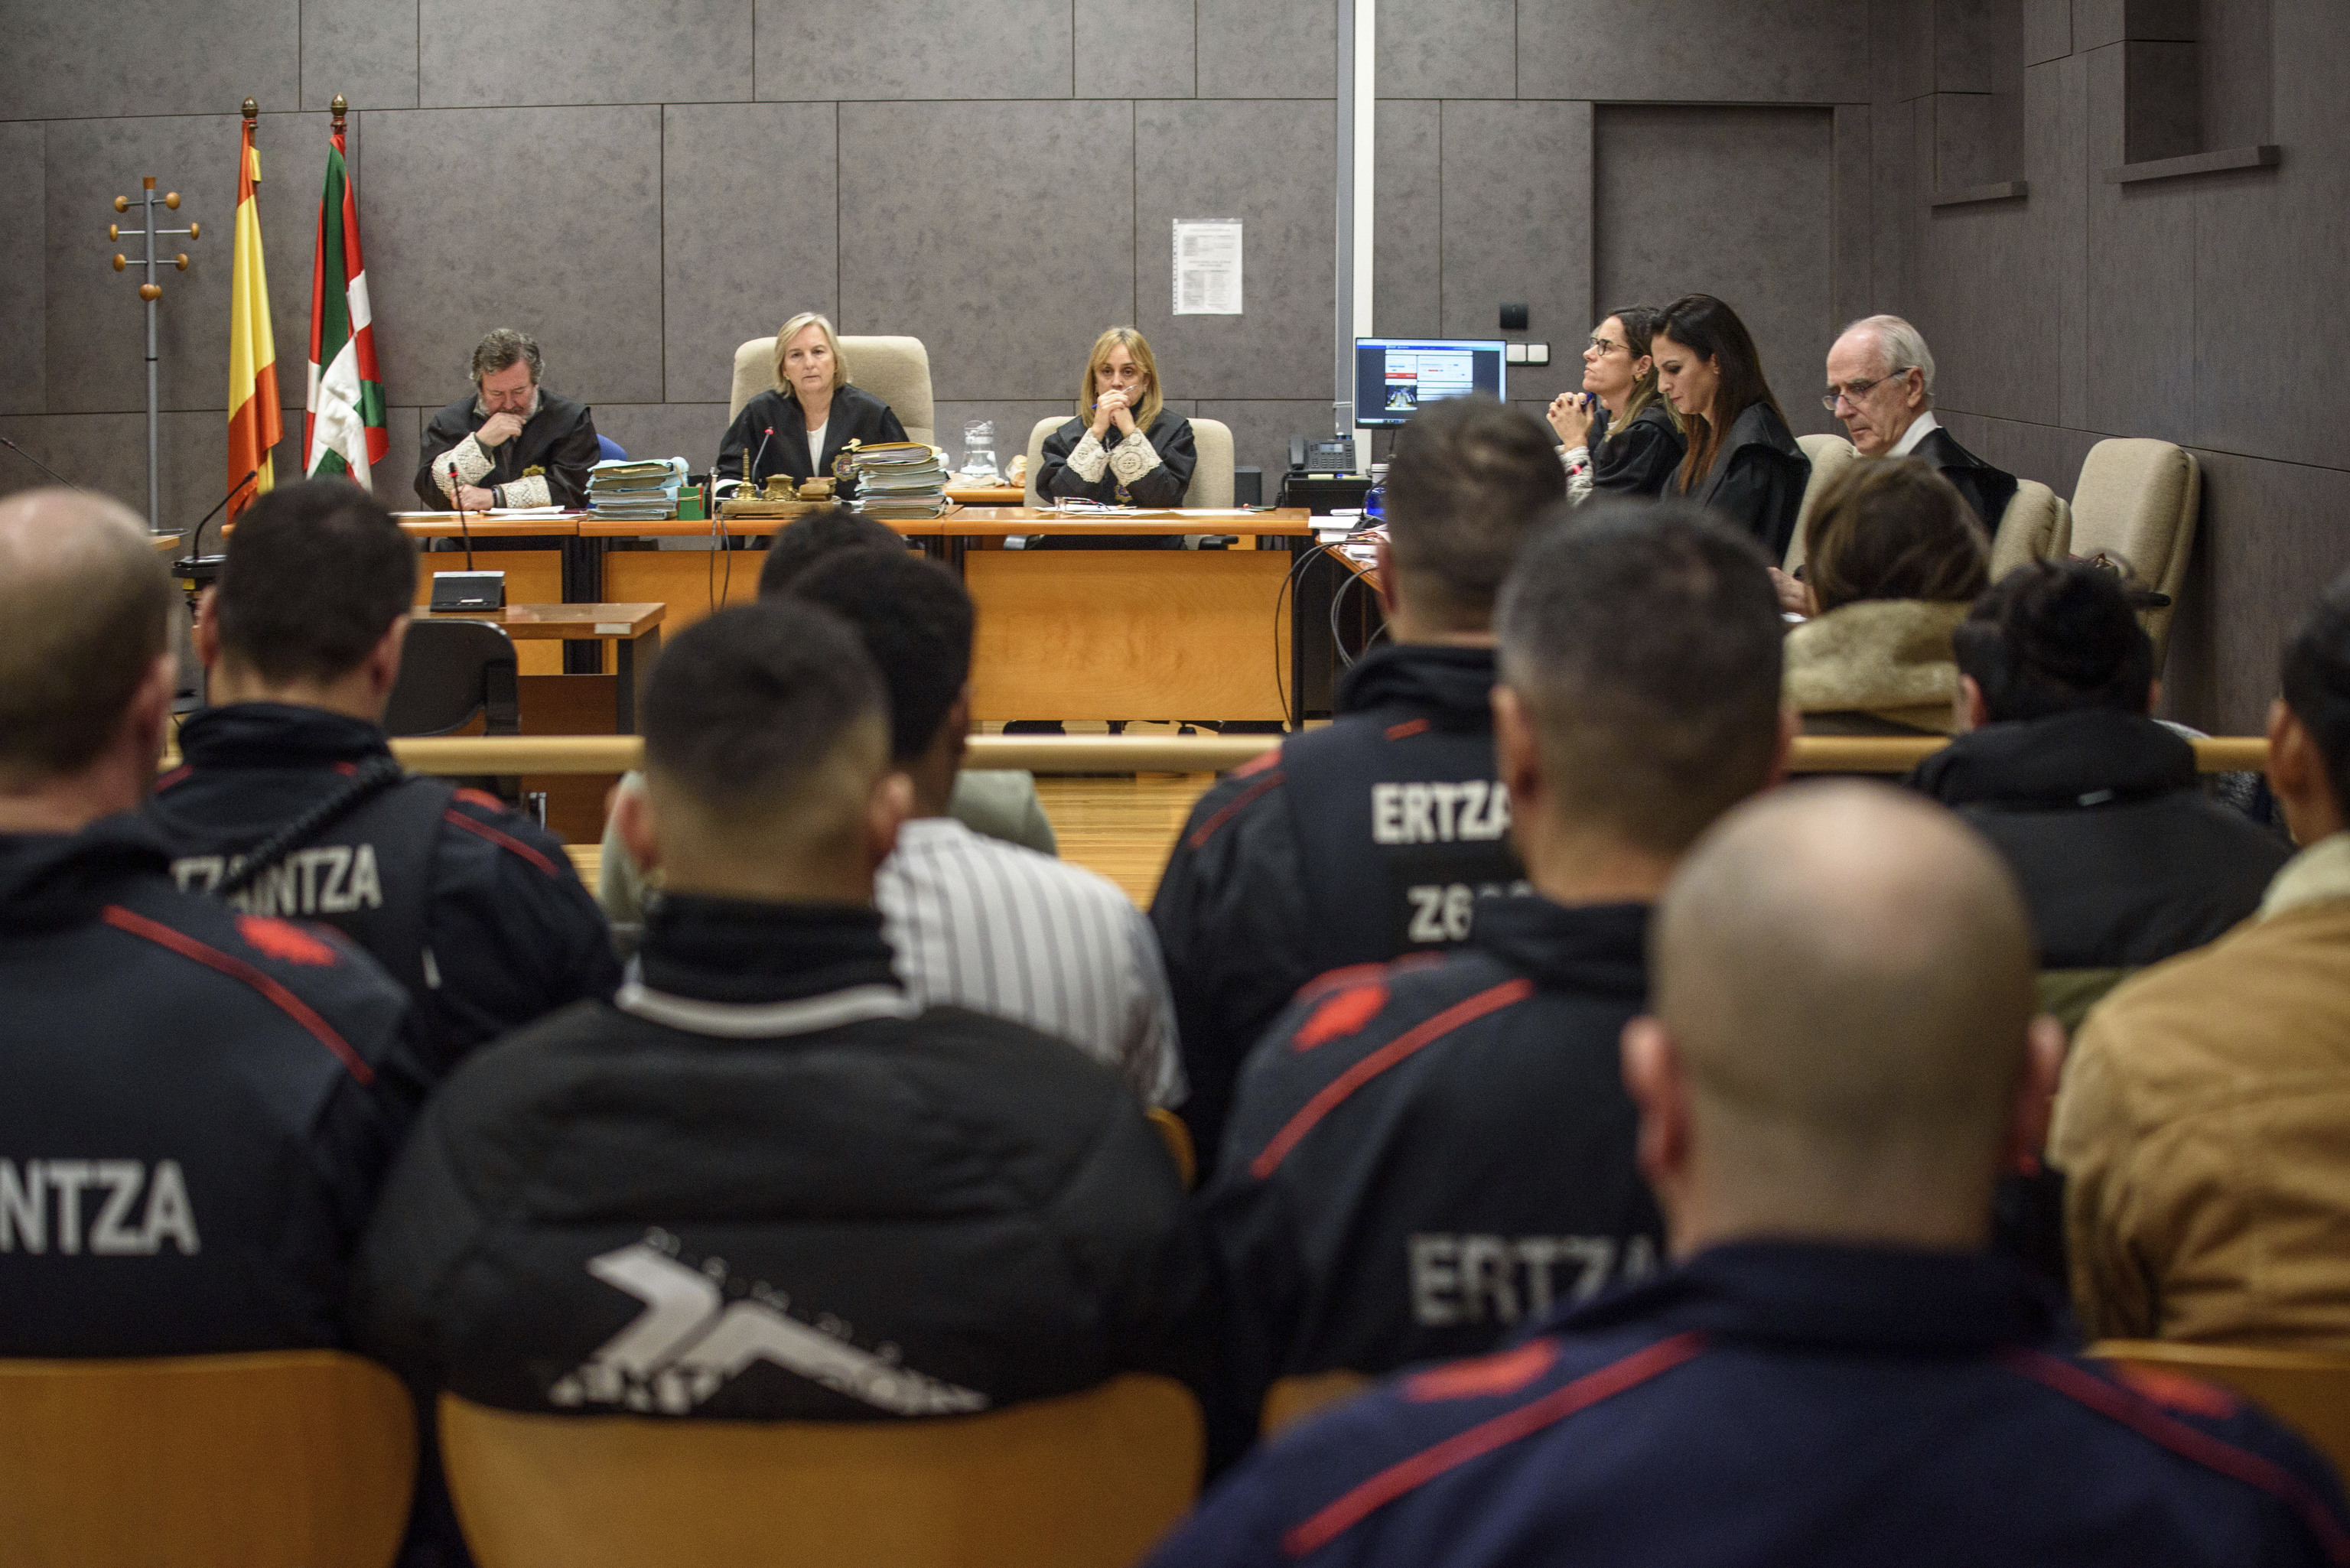 El tribunal observa a los siete acusados antes del inicio del juicio celebrado en el Palacio de Justicia de Bilbao.